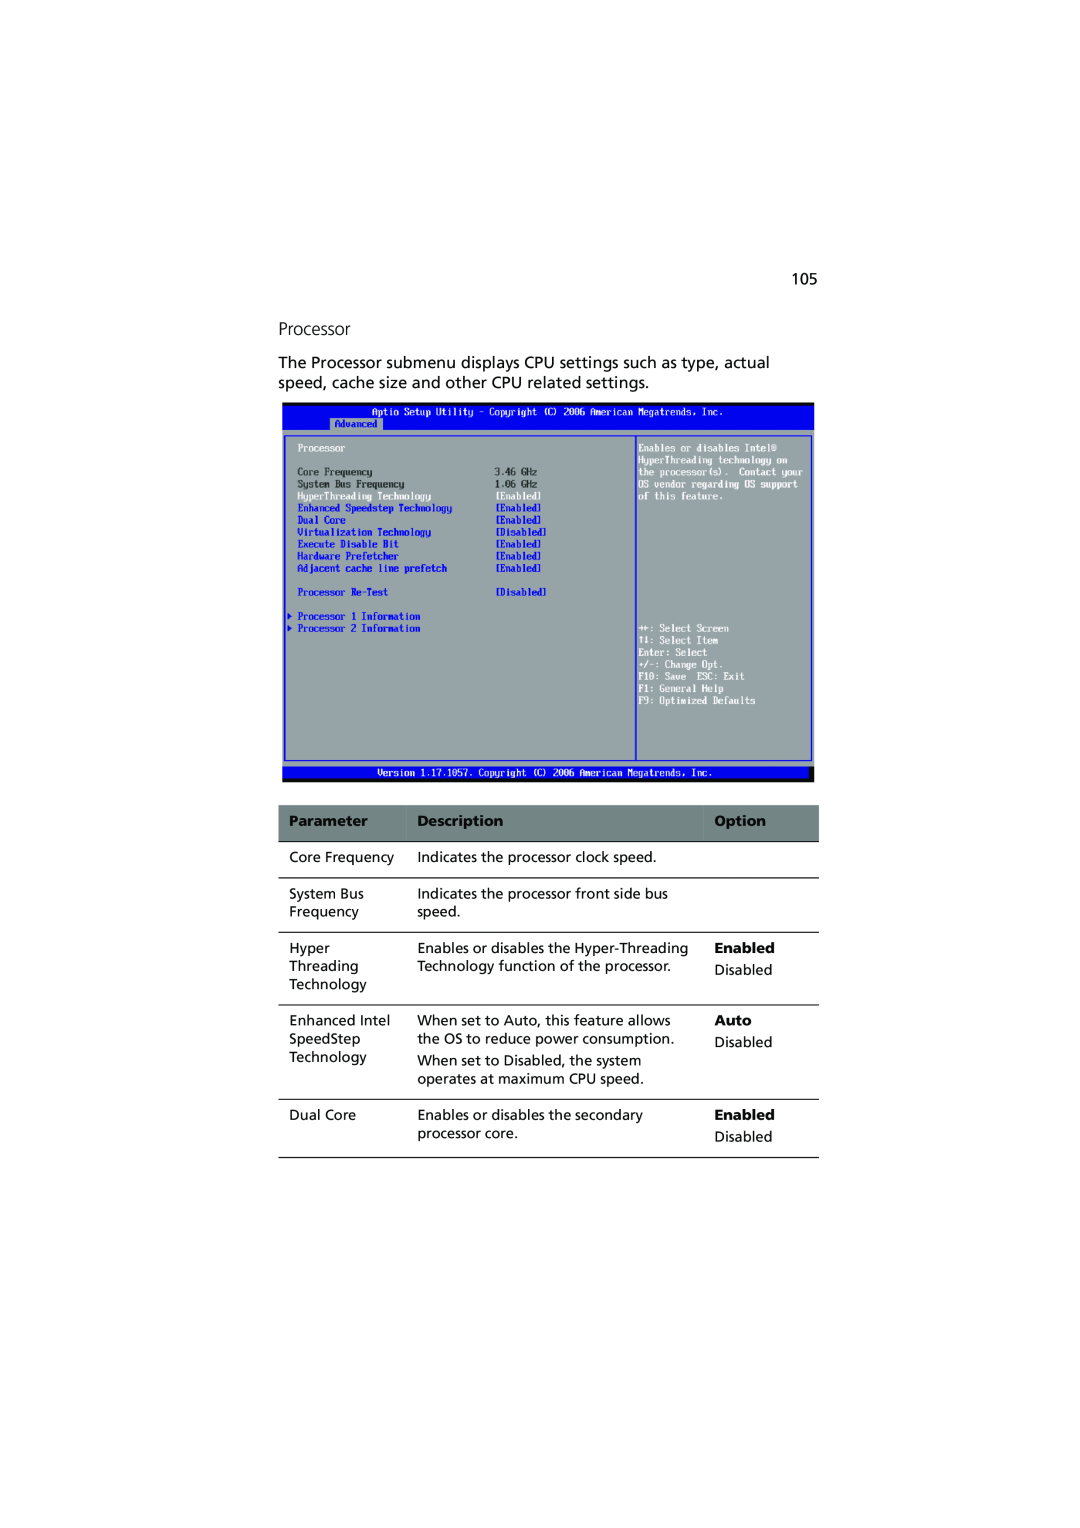 Acer R720 Series manual Processor, Parameter, Description, Option, Enabled, Auto 